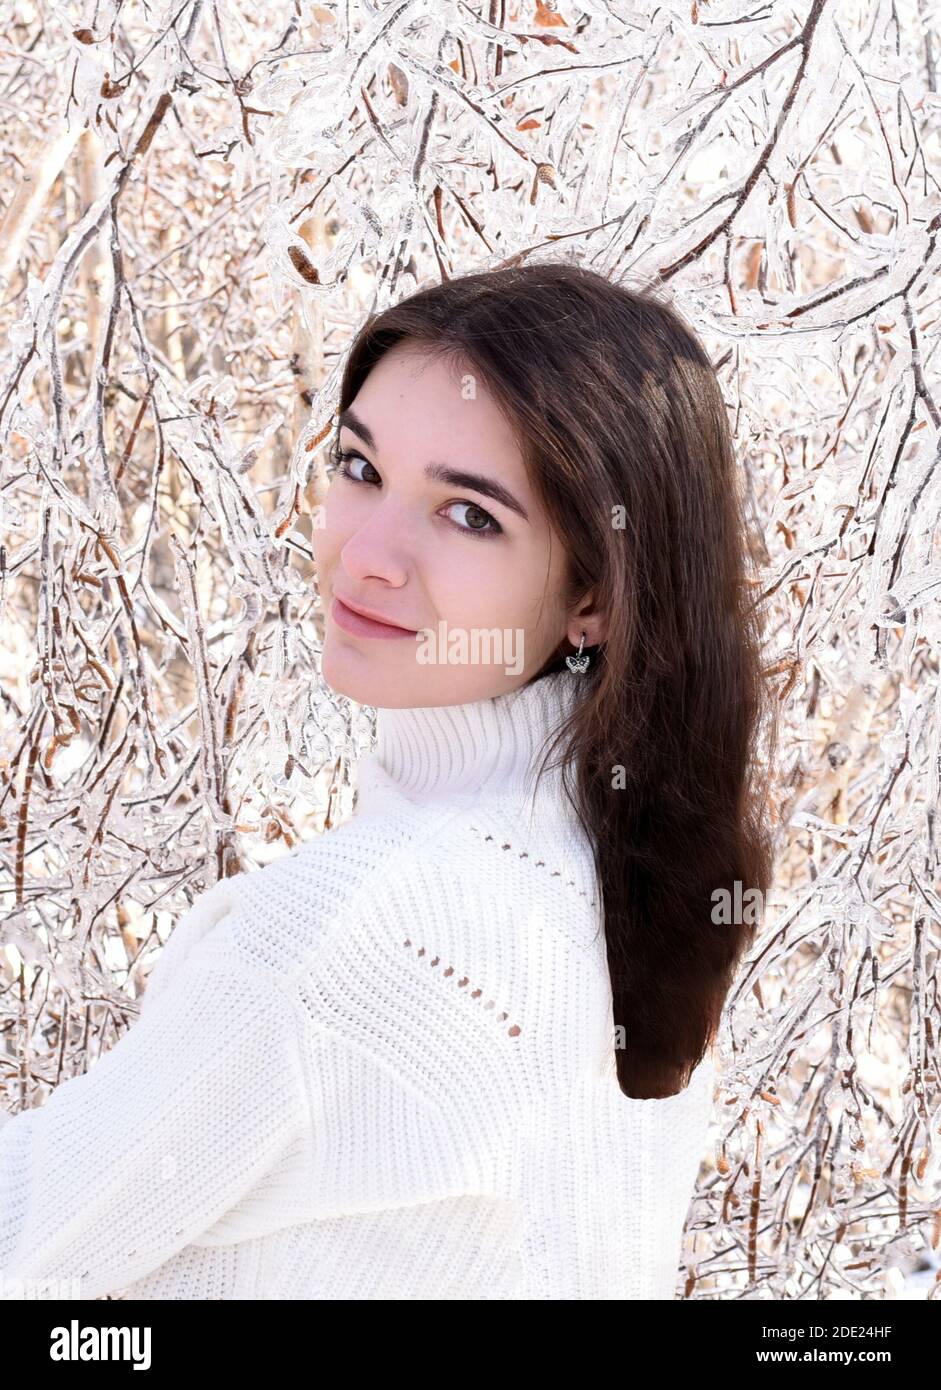 Portrait d'une jeune femme russe en chandail blanc regardant la caméra à côté des branches gelées de bouleaux, couvertes de glace. Forêt d'hiver en Russie Banque D'Images